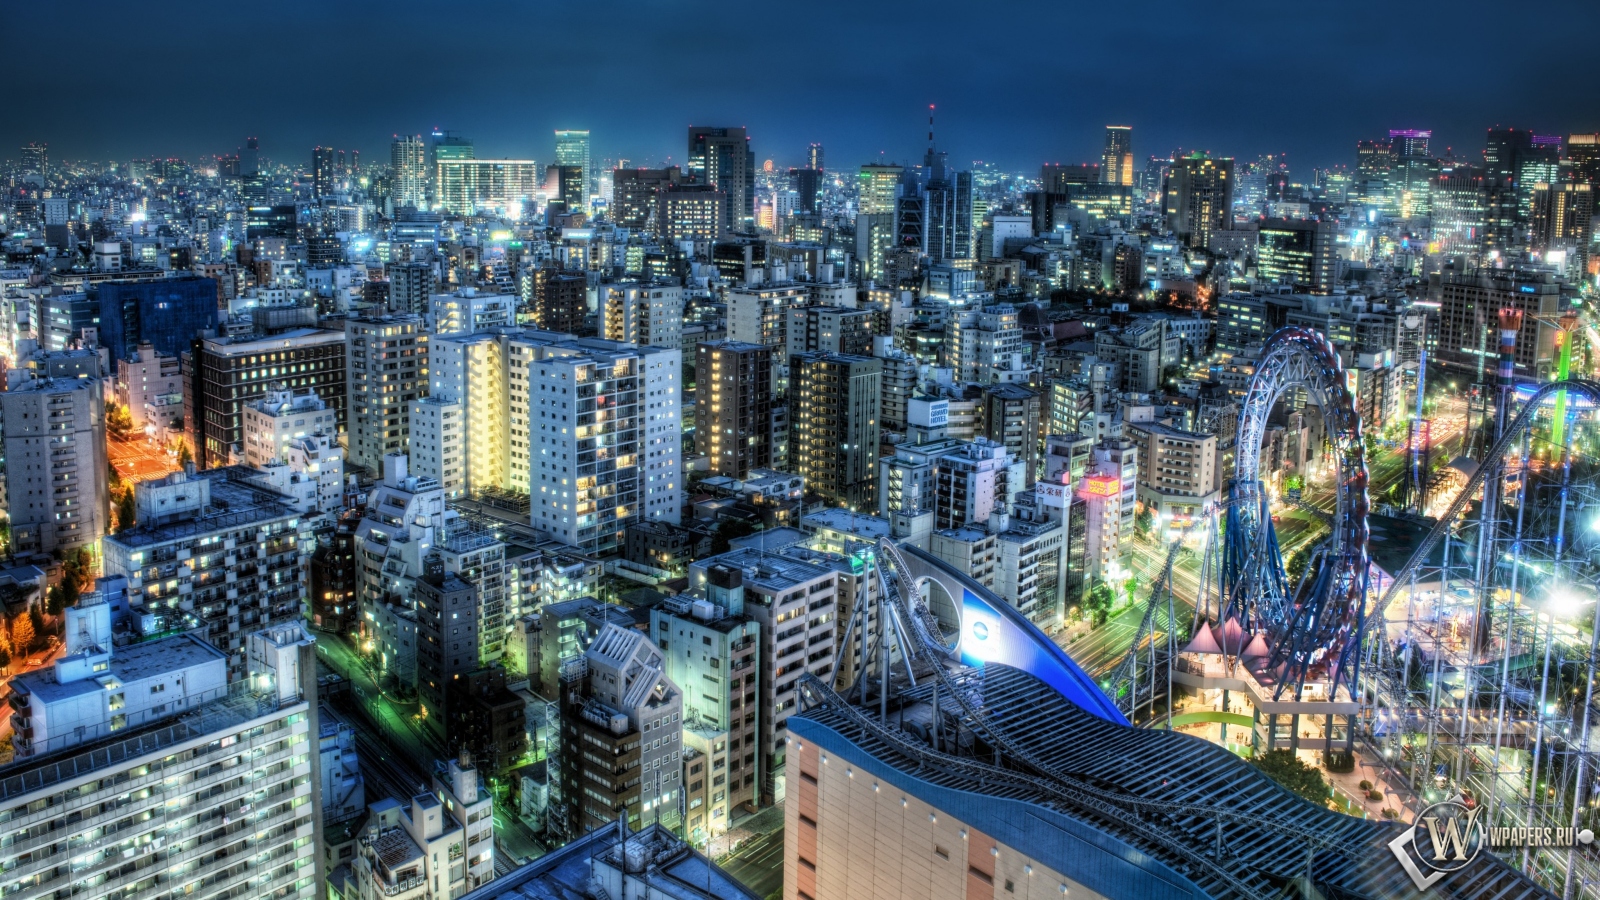 Tokyo at Dusk 1600x900